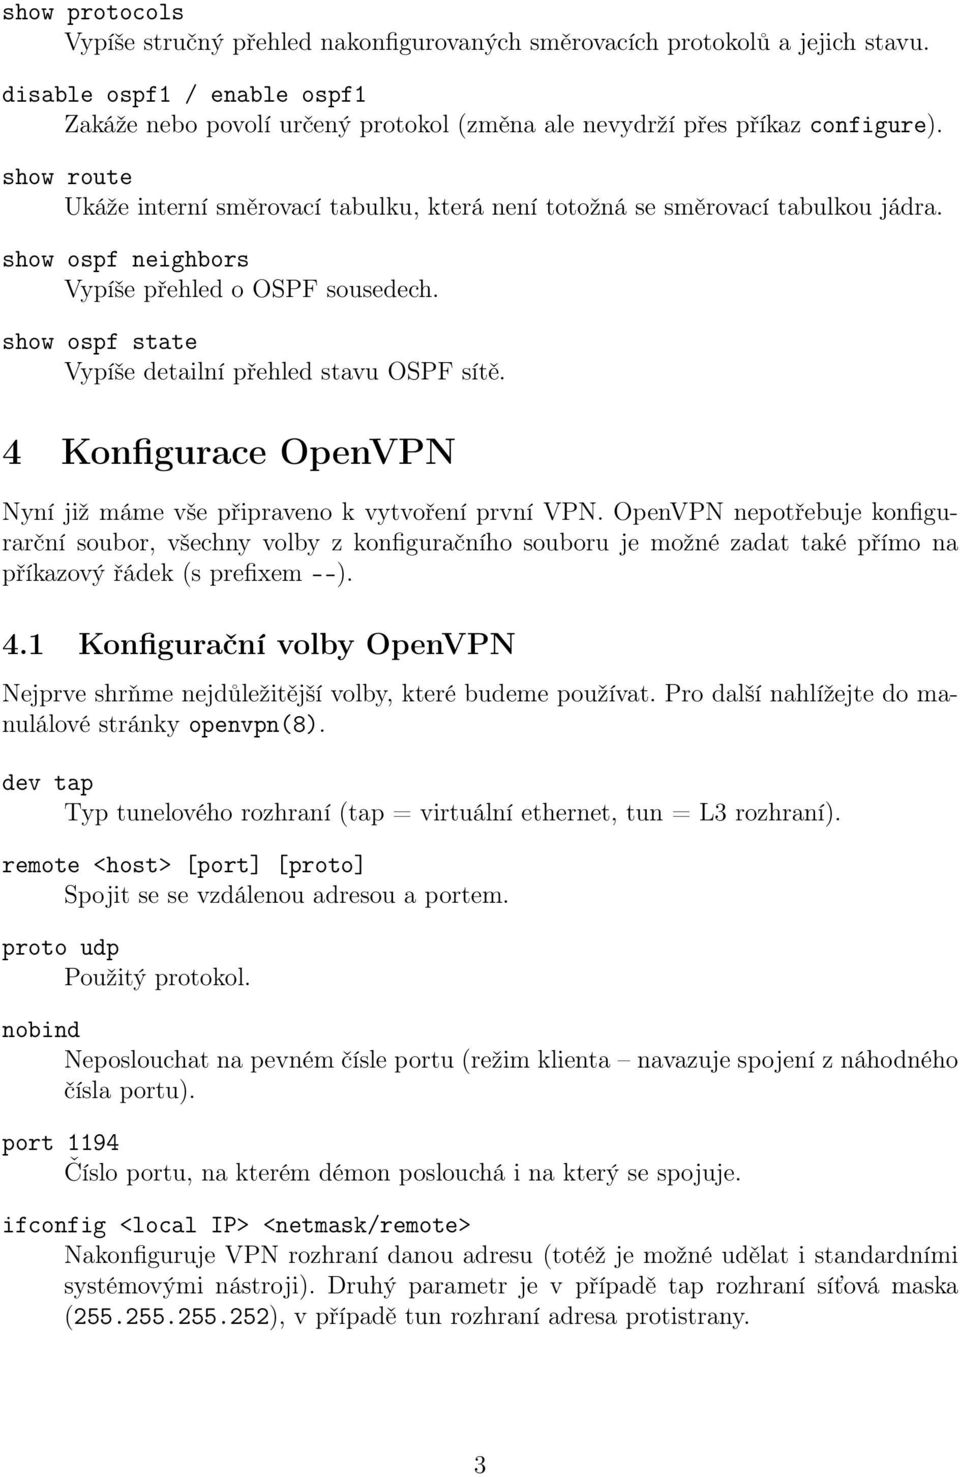 show ospf neighbors Vypíše přehled o OSPF sousedech. show ospf state Vypíše detailní přehled stavu OSPF sítě. 4 Konfigurace OpenVPN Nyní již máme vše připraveno k vytvoření první VPN.